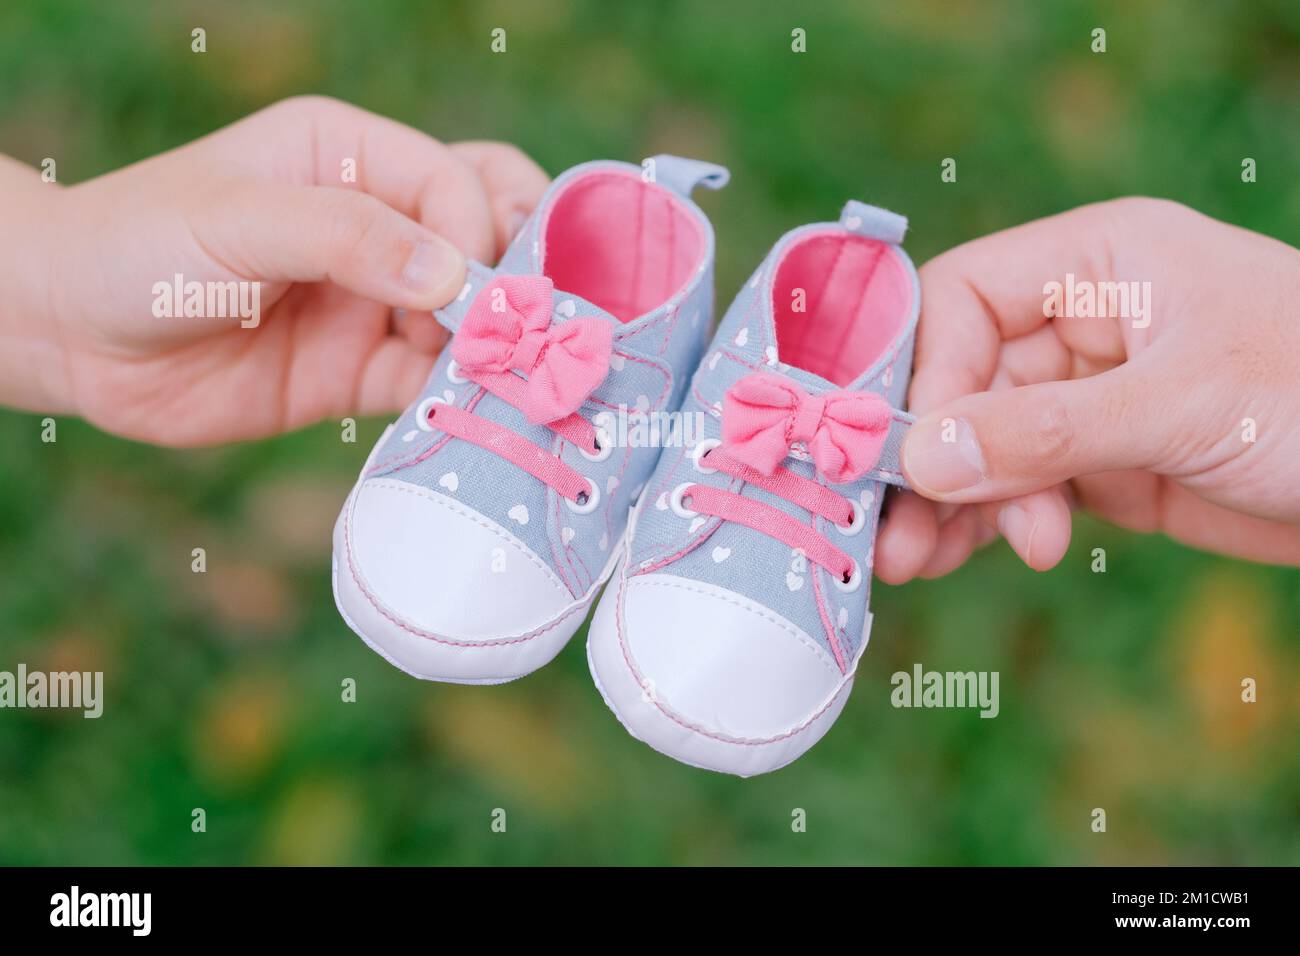 Nahaufnahme der blauen und pinkfarbenen Schuhe für Mädchen, die mit den Händen der Eltern verbunden wurden. Turnschuhe haben Schleifen, kleine Herzen. Grüner Hintergrund. Schwangerschaftsankündigung. Stockfoto